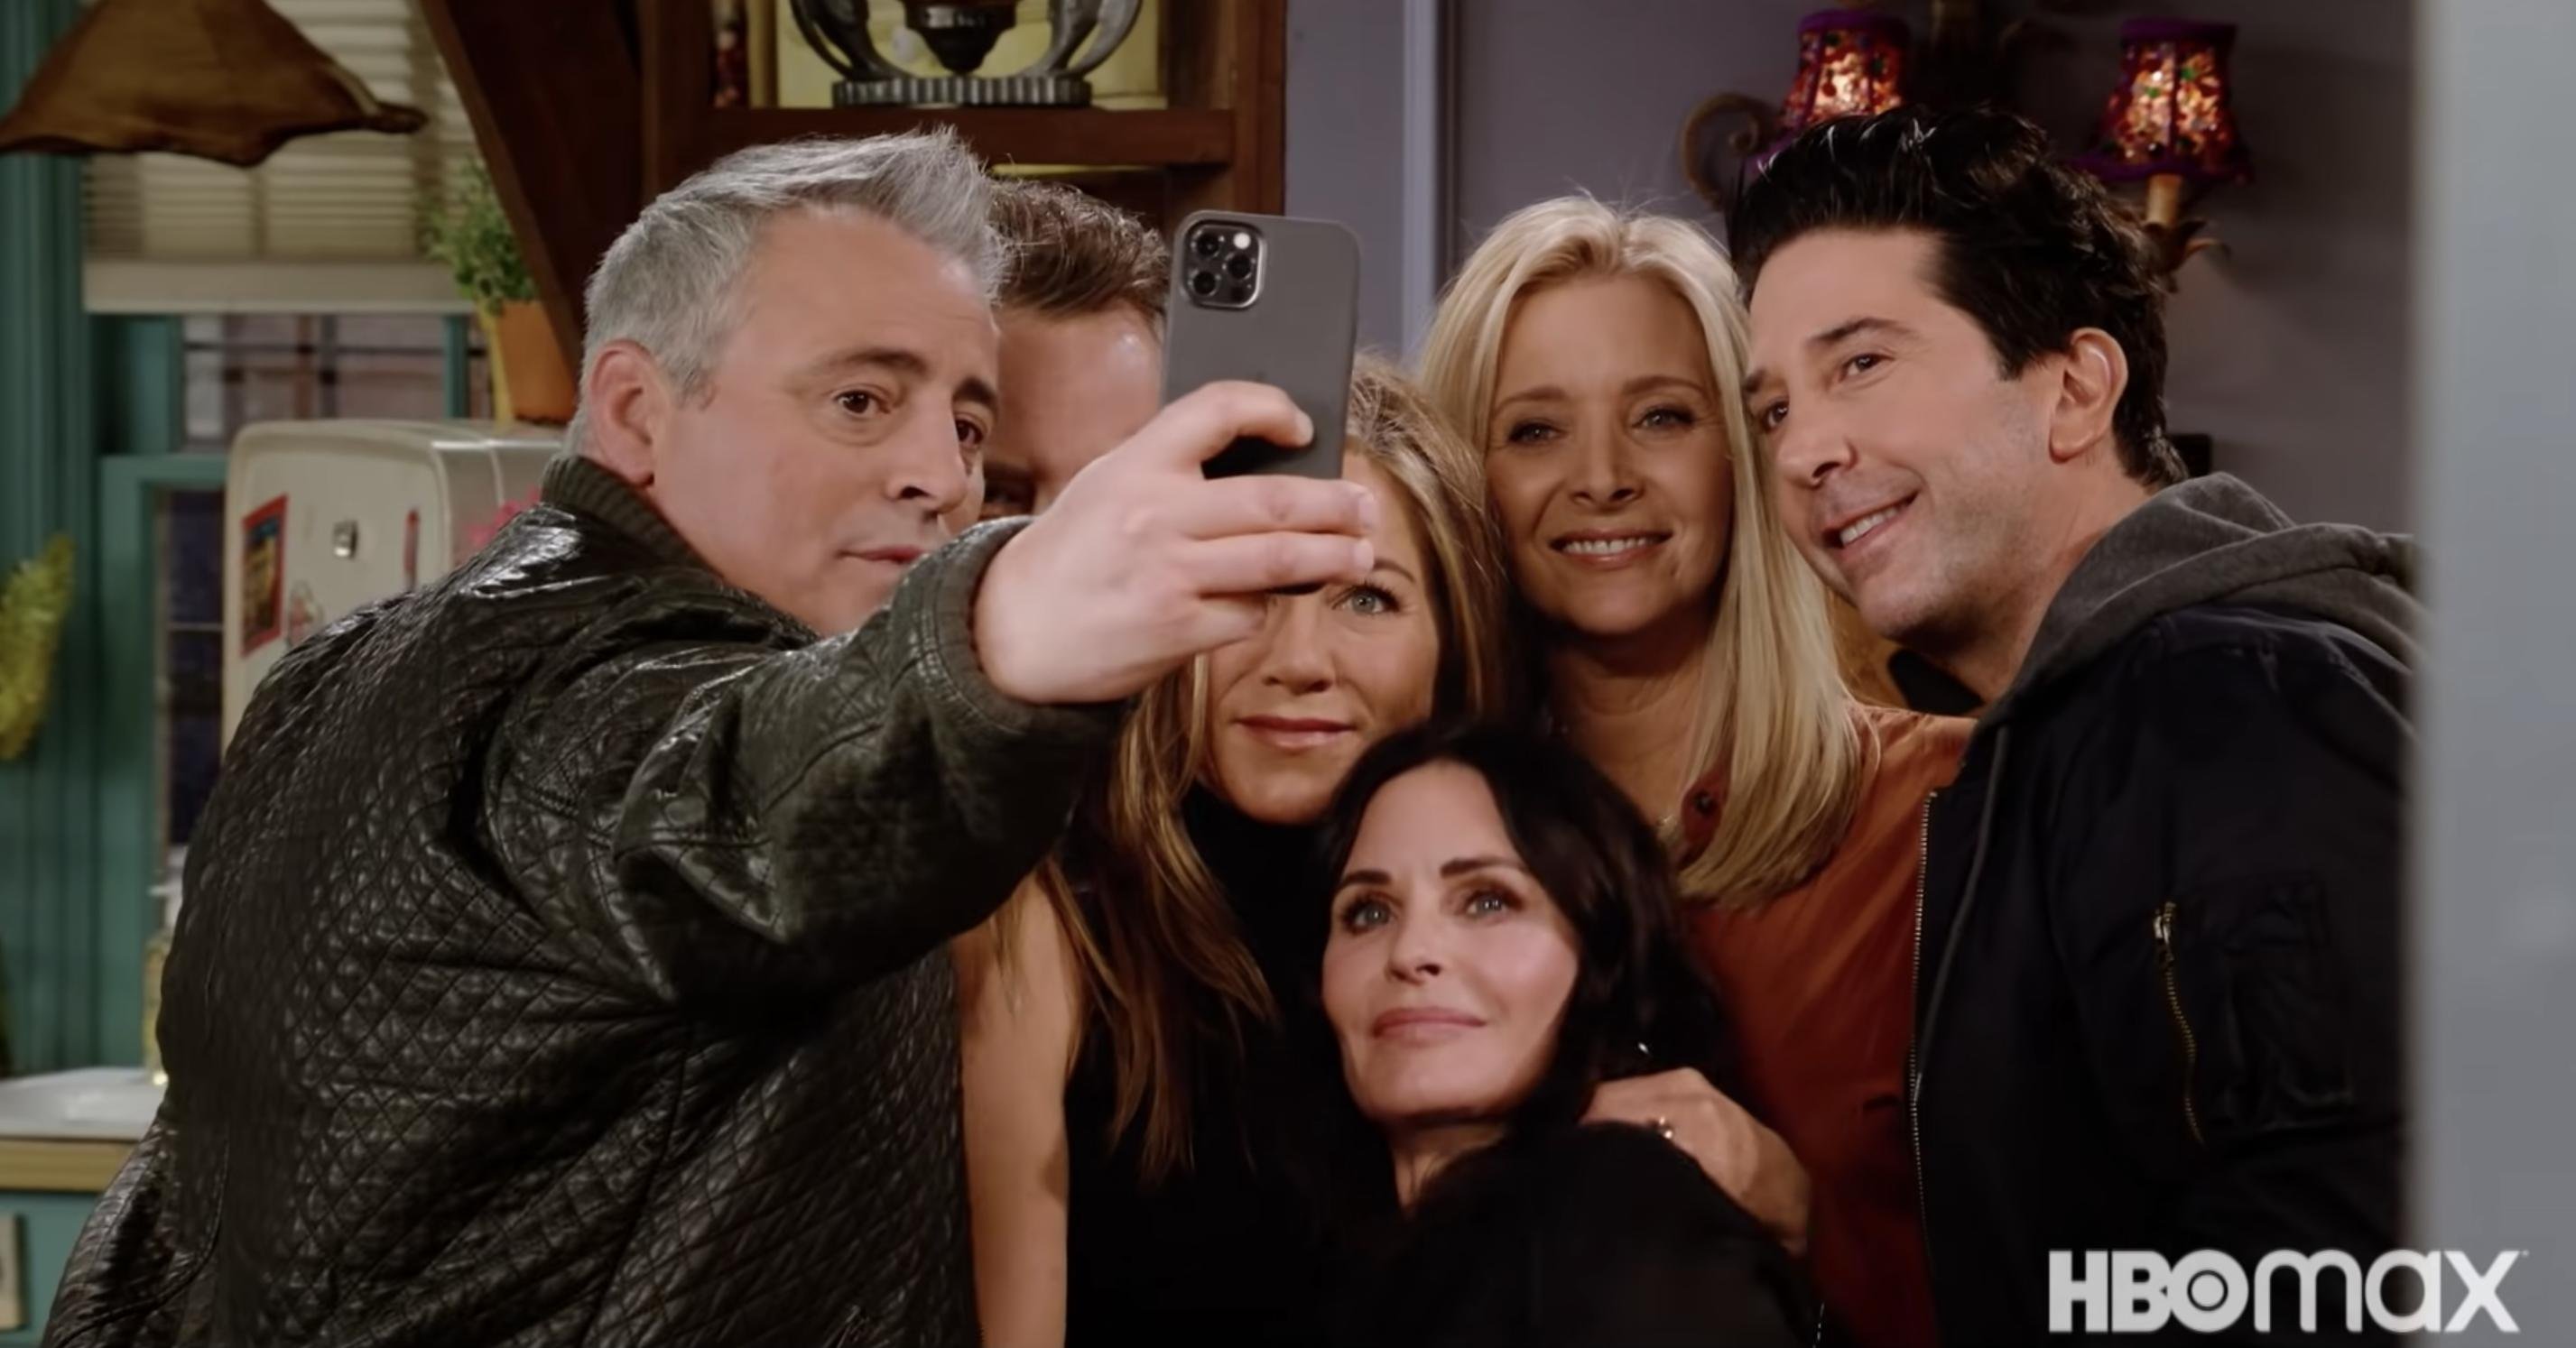 Em 2021, Friends ganhou um episódio especial no HBO Max chamado Friends: The Reunion, que juntou novamente o elenco principal da série.